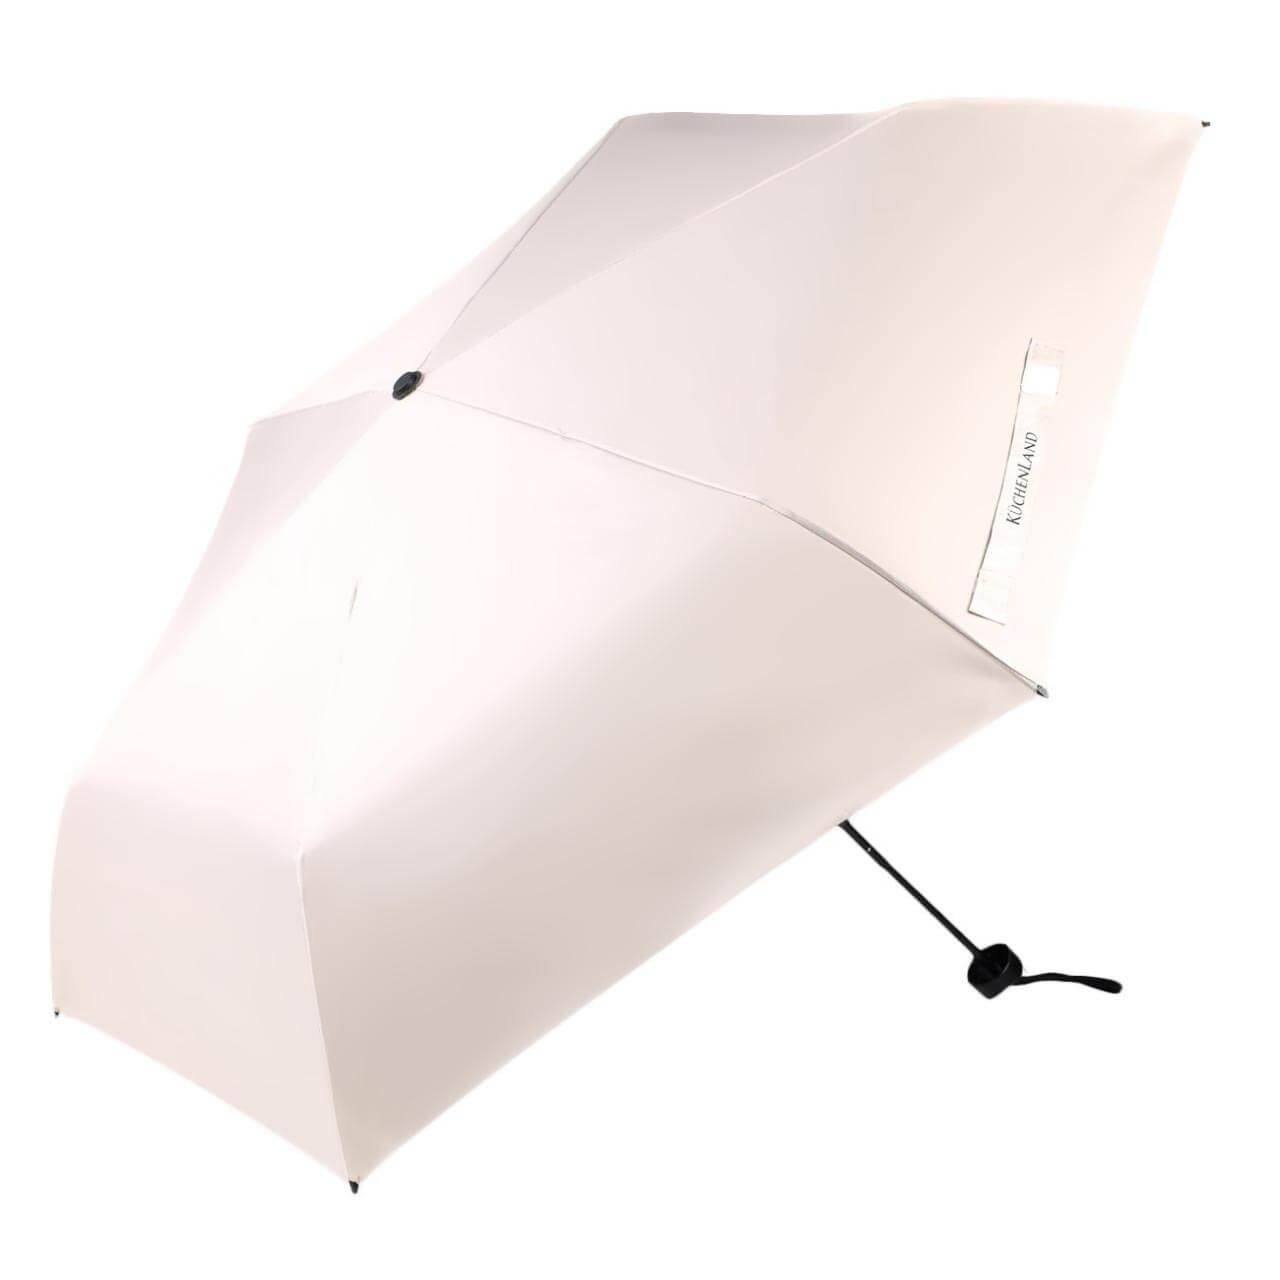 Зонт, 52 см, складной, двусторонний, эпонж, бежево-черный, Rainy day шабер двусторонний лопатка прямая вогнутая 13 см на блистере серебристый